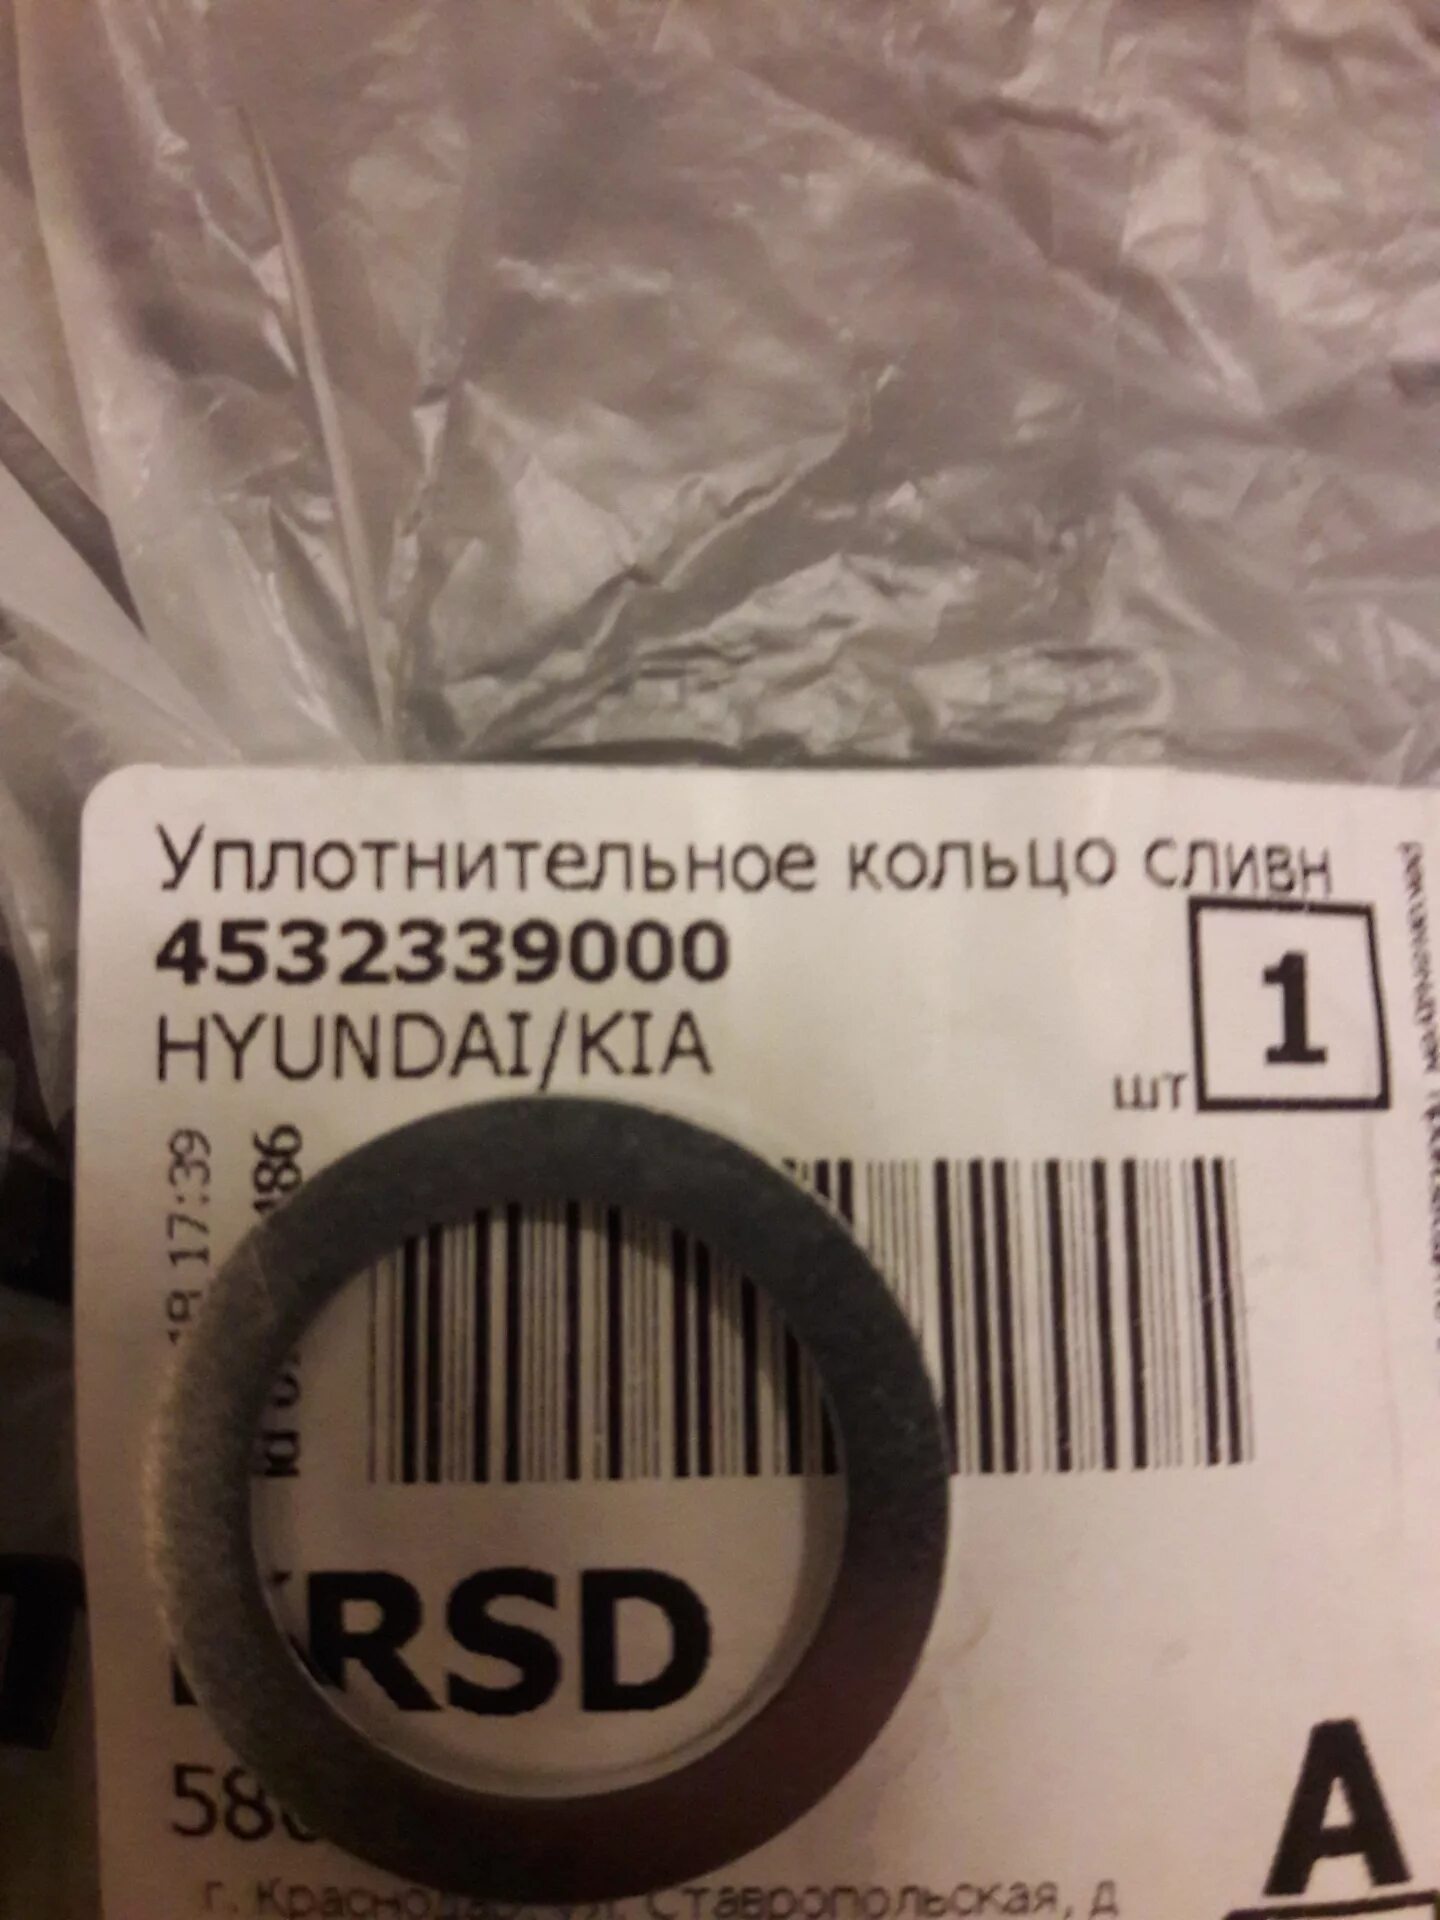 Кольцо киа рио 3. Уплотнительное кольцо для сливной пробки на Солярис 2015. 4532339000 Hyundai/Kia кольцо уплотнительное. Кольцо уплотнительное Солярис 1.6. Кольцо уплотнительное Киа Рио 3.